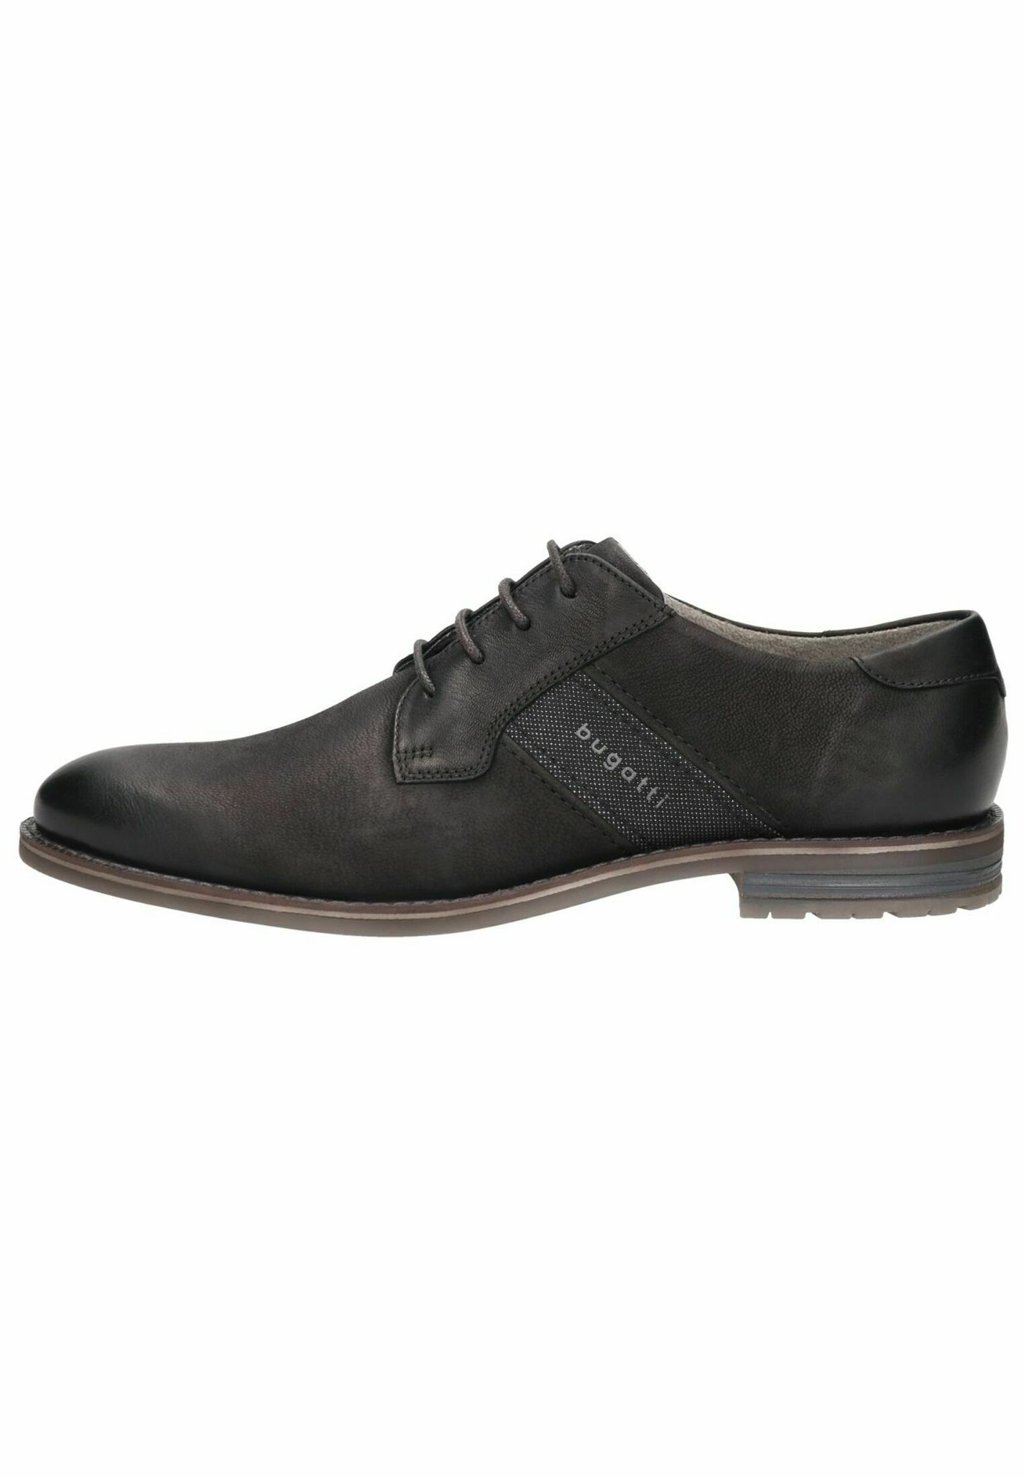 Деловые туфли на шнуровке bugatti, цвет schwarz деловые туфли на шнуровке bugatti цвет black